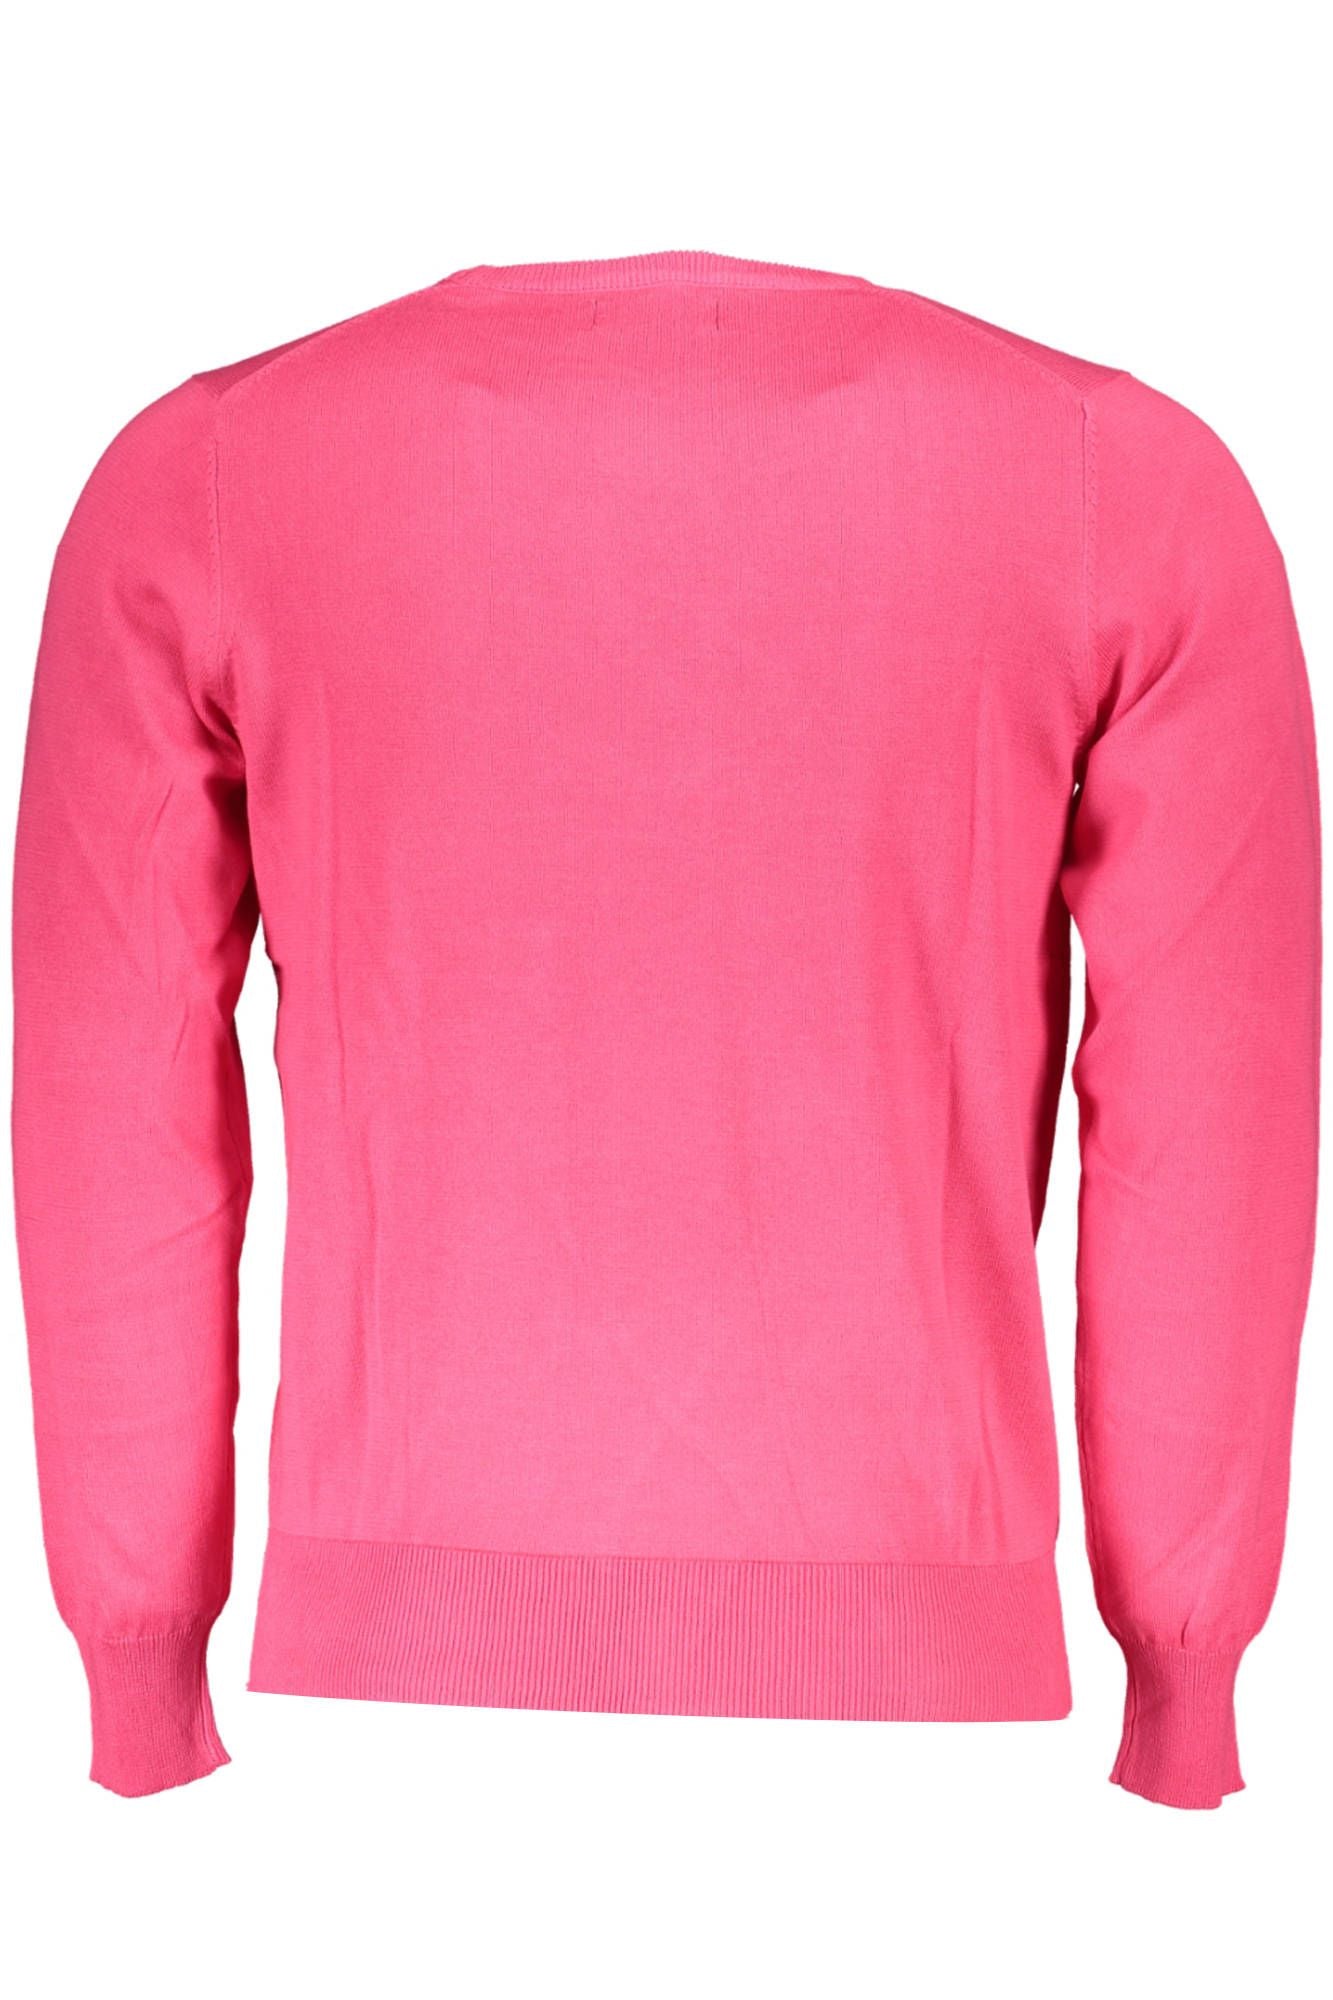 Chic Pink Round Neck Cotton Sweater